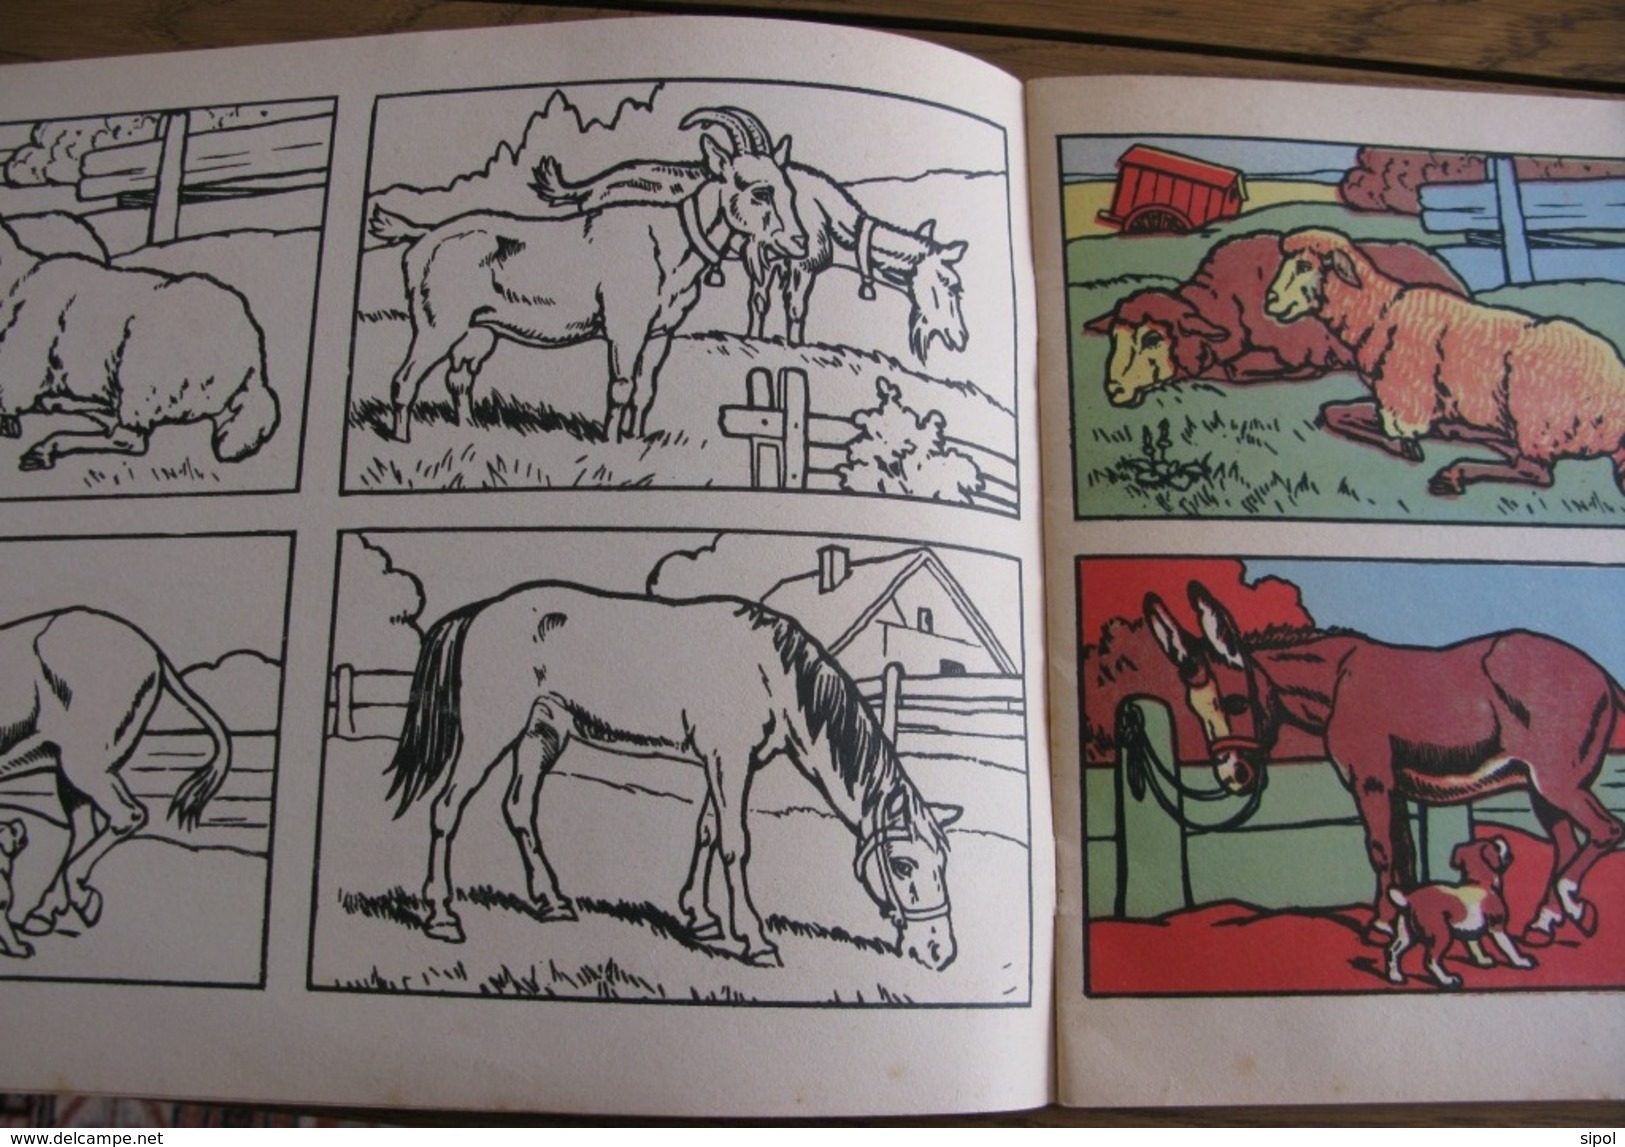 Album à colorier Editions Bias Paris Années 1945 env 12 pages 30 x 21.5 cm  Animaux sauvages et de la ferme (Ourson, gir